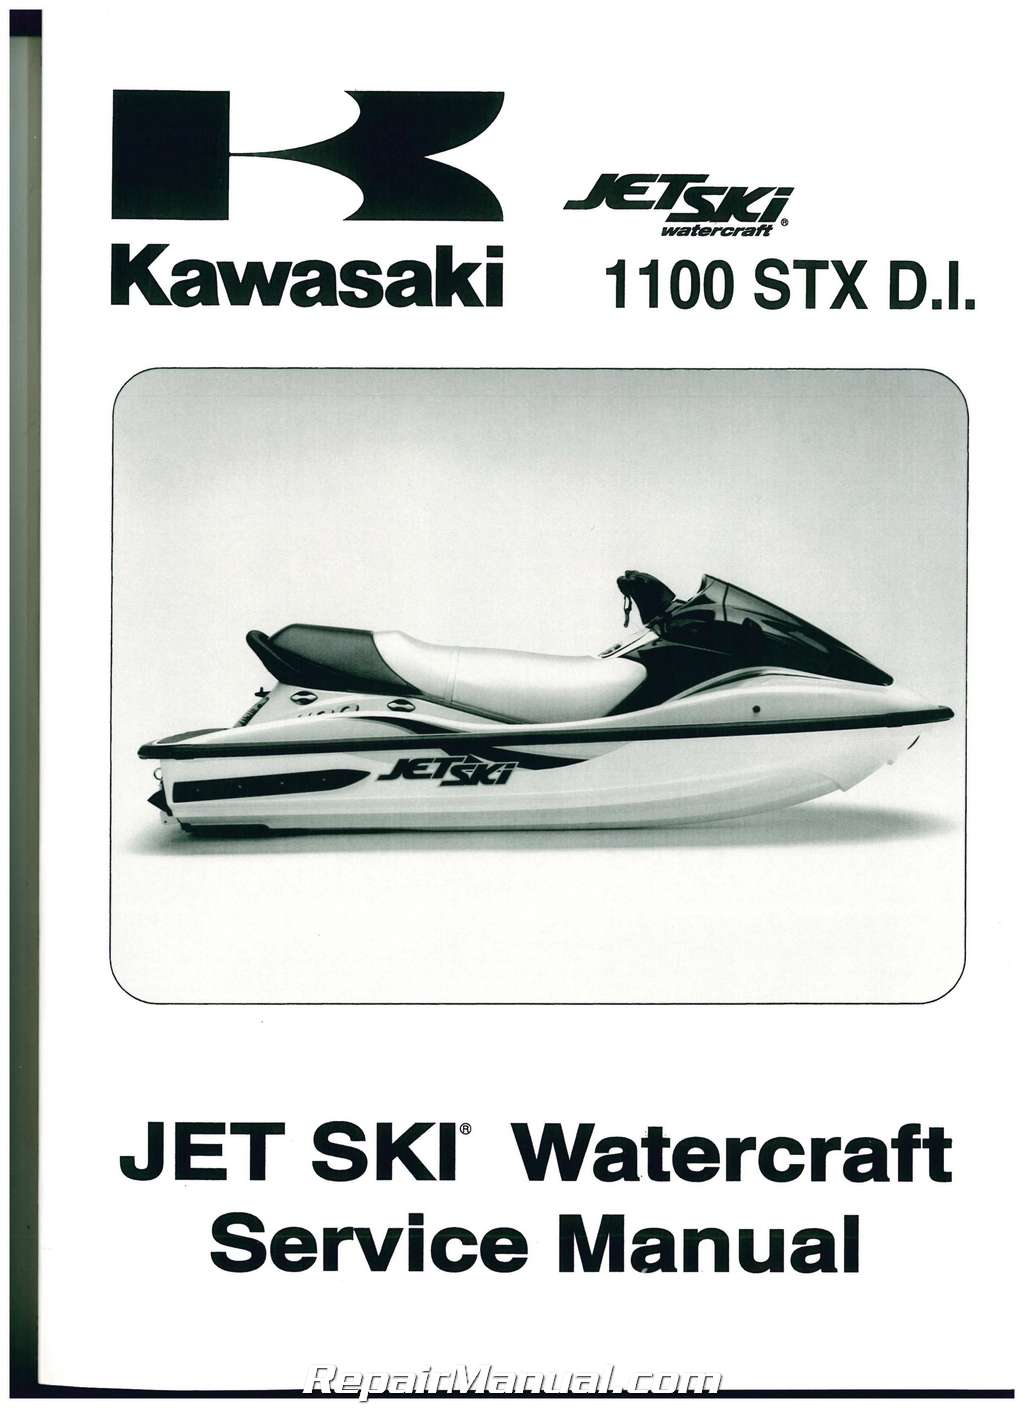 2002 Kawasaki 900 Sts Service Manual